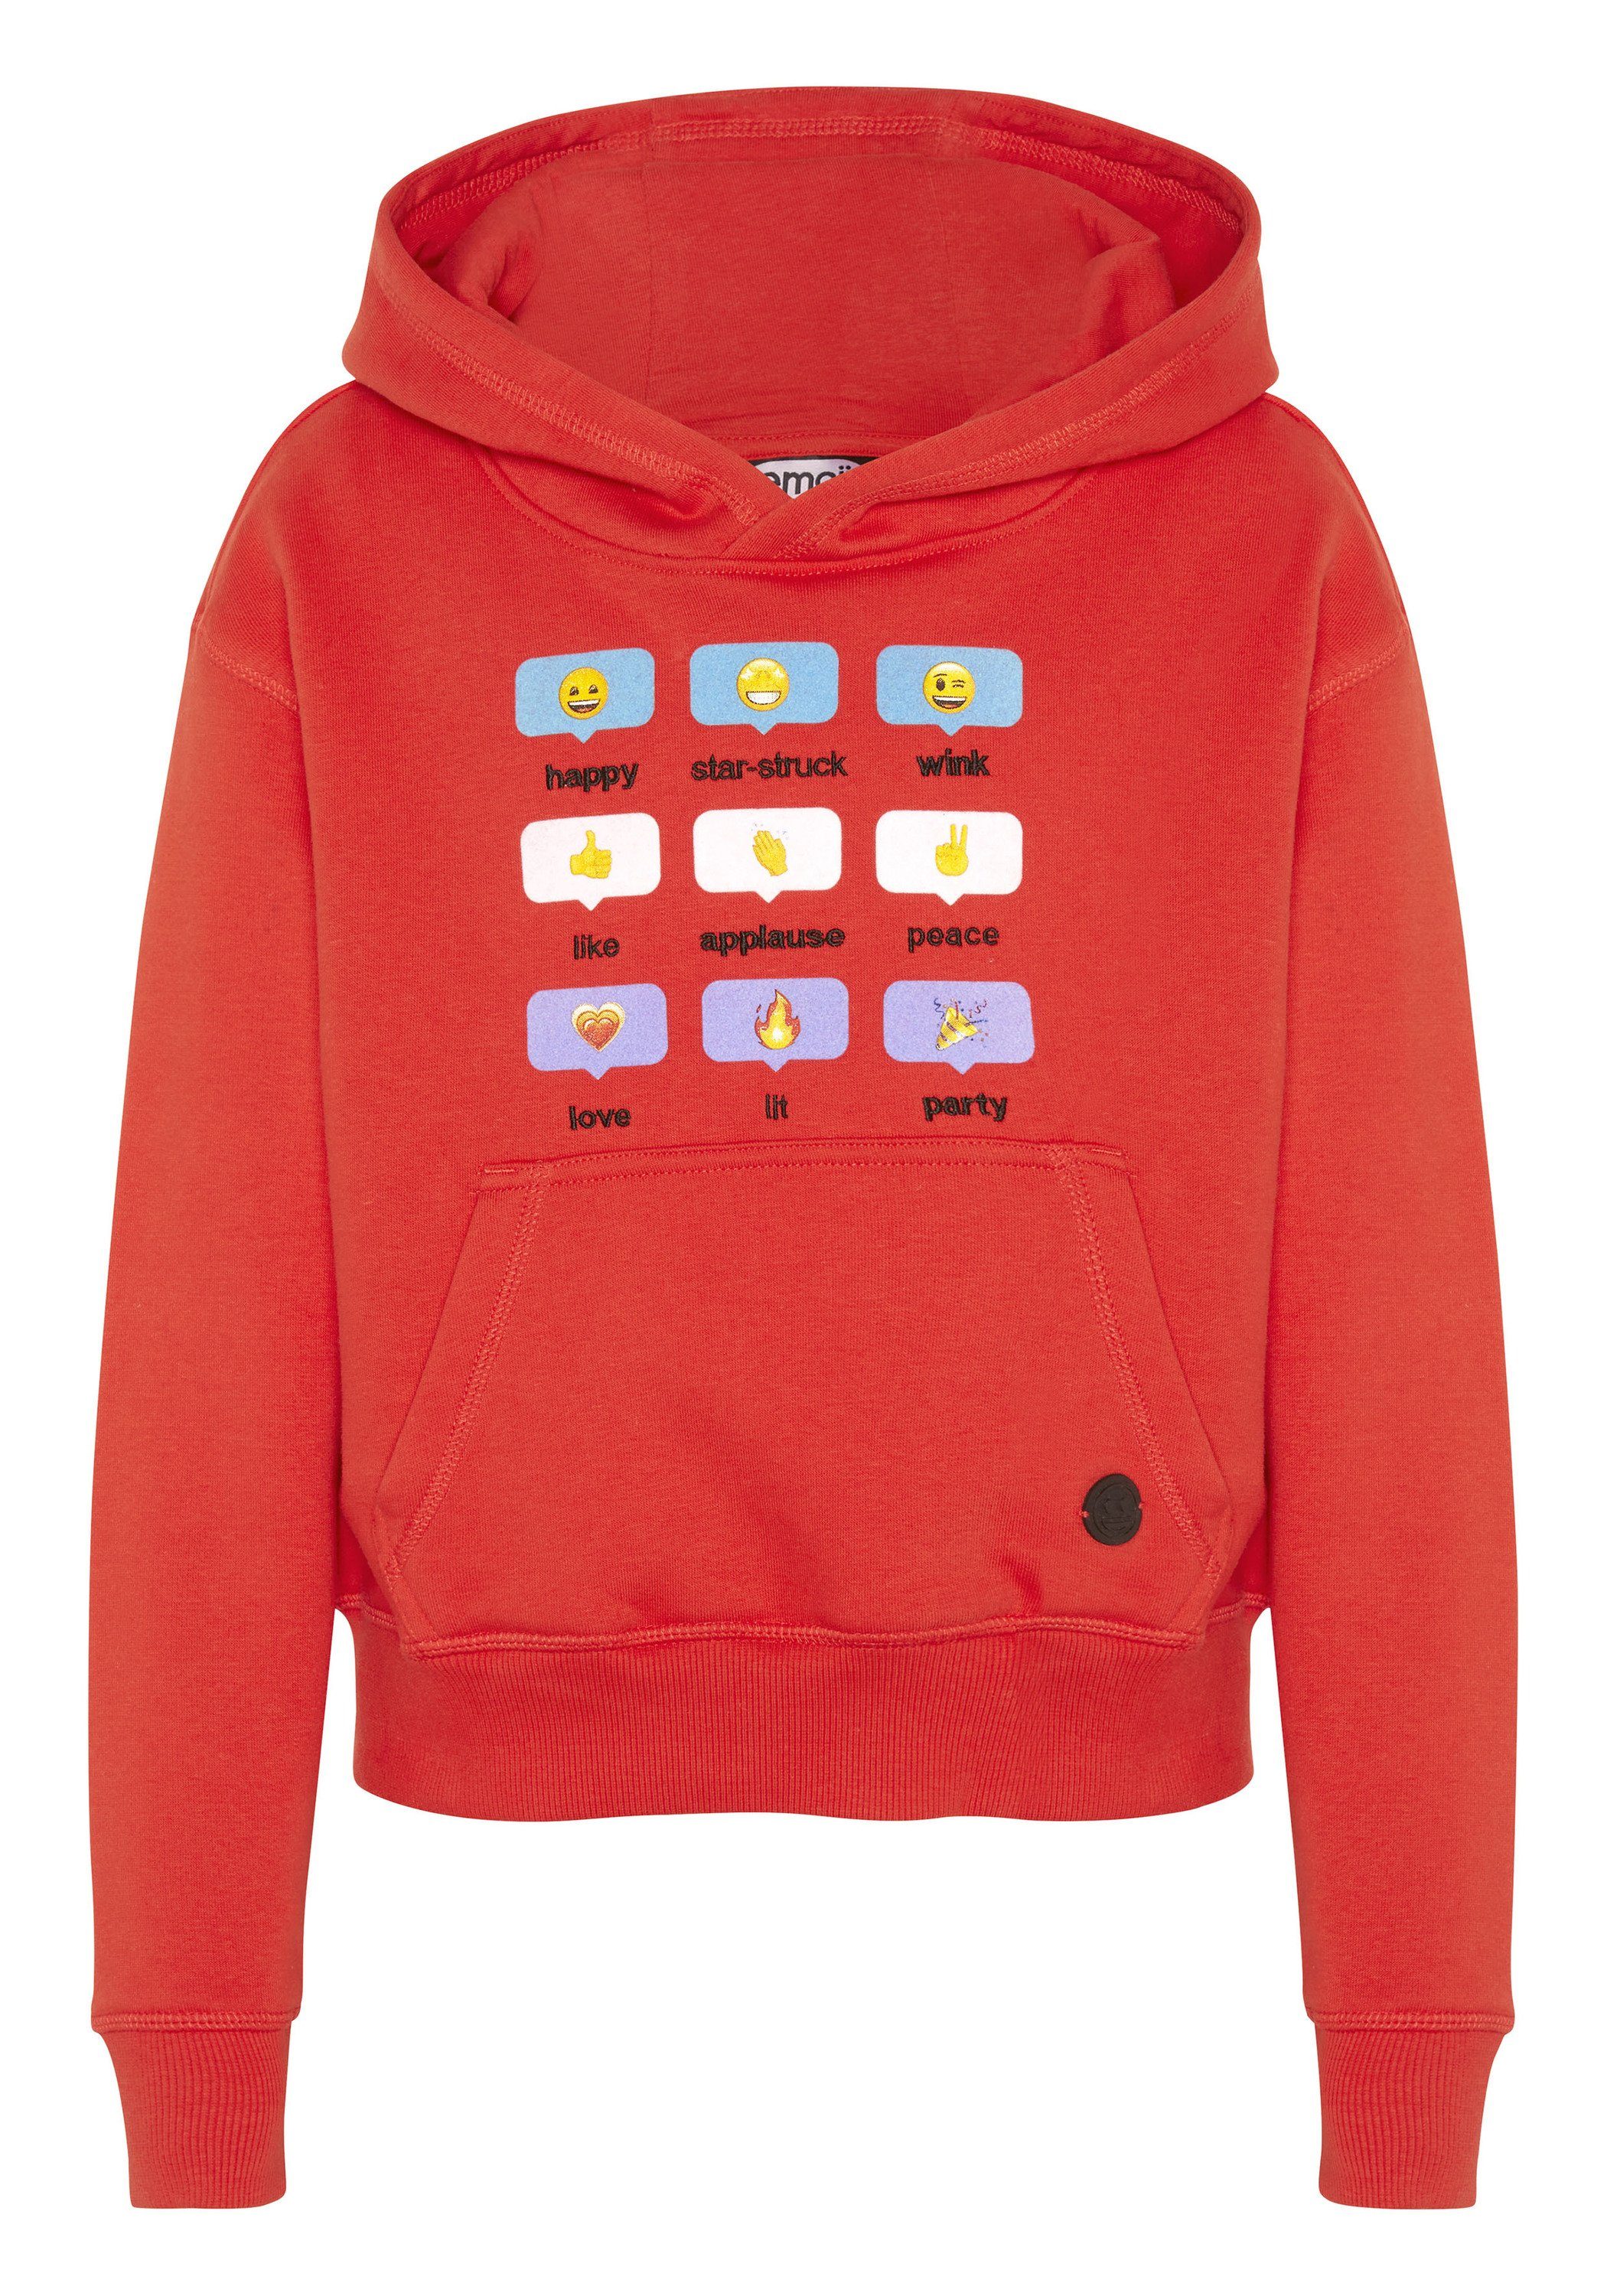 Sweatshirt und mit Co Emoji Grinsegesicht-Motiven